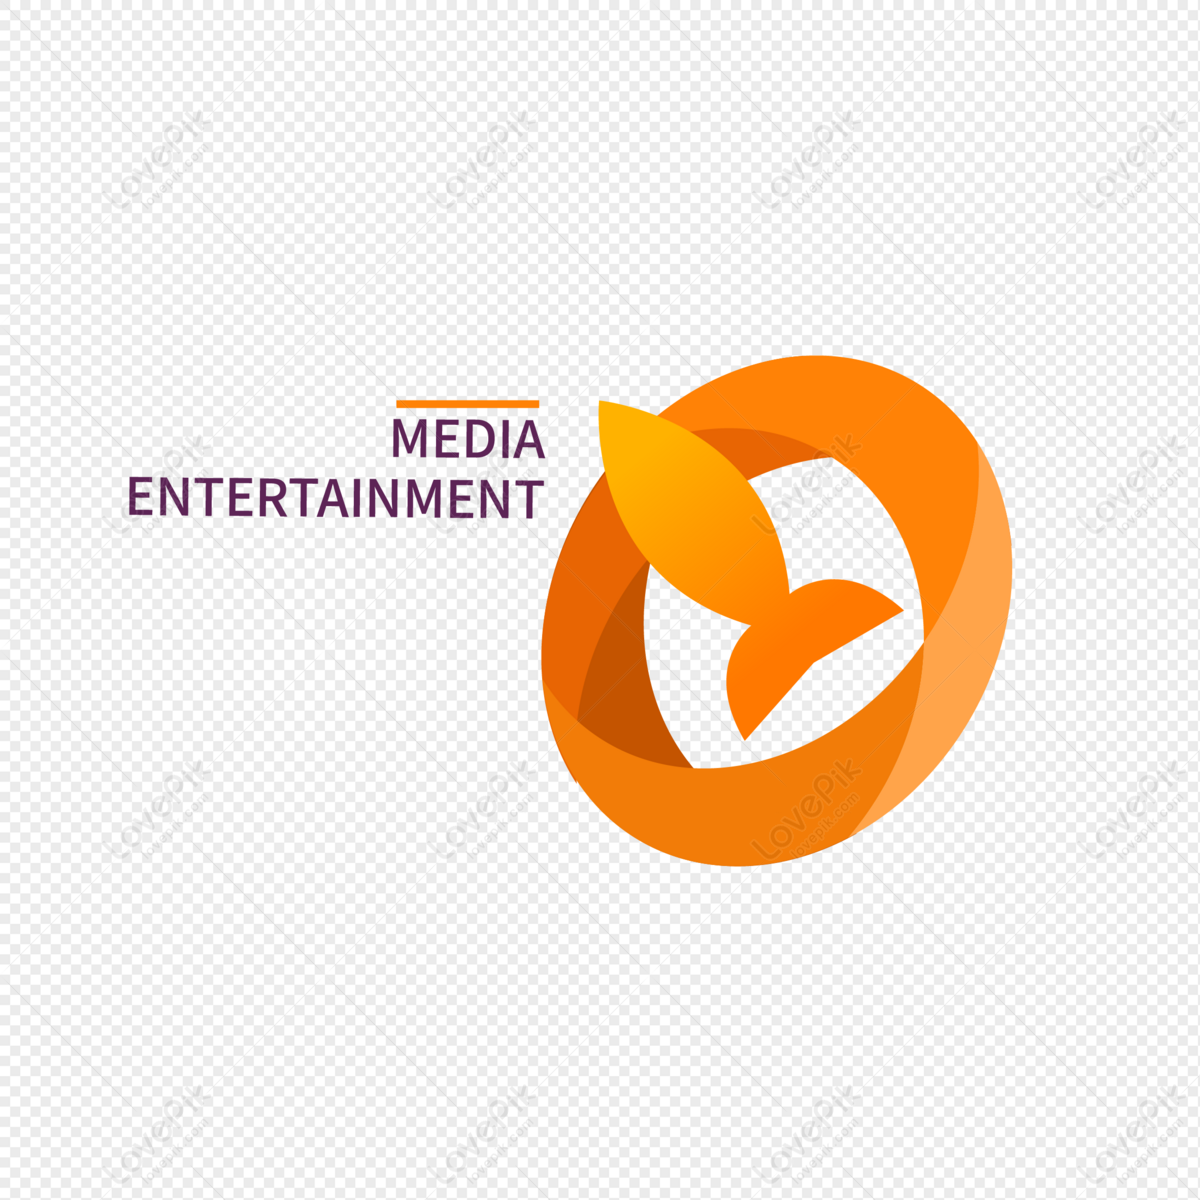 Children's Entertainment Logo Stock Illustrations – 536 Children's Entertainment  Logo Stock Illustrations, Vectors & Clipart - Dreamstime